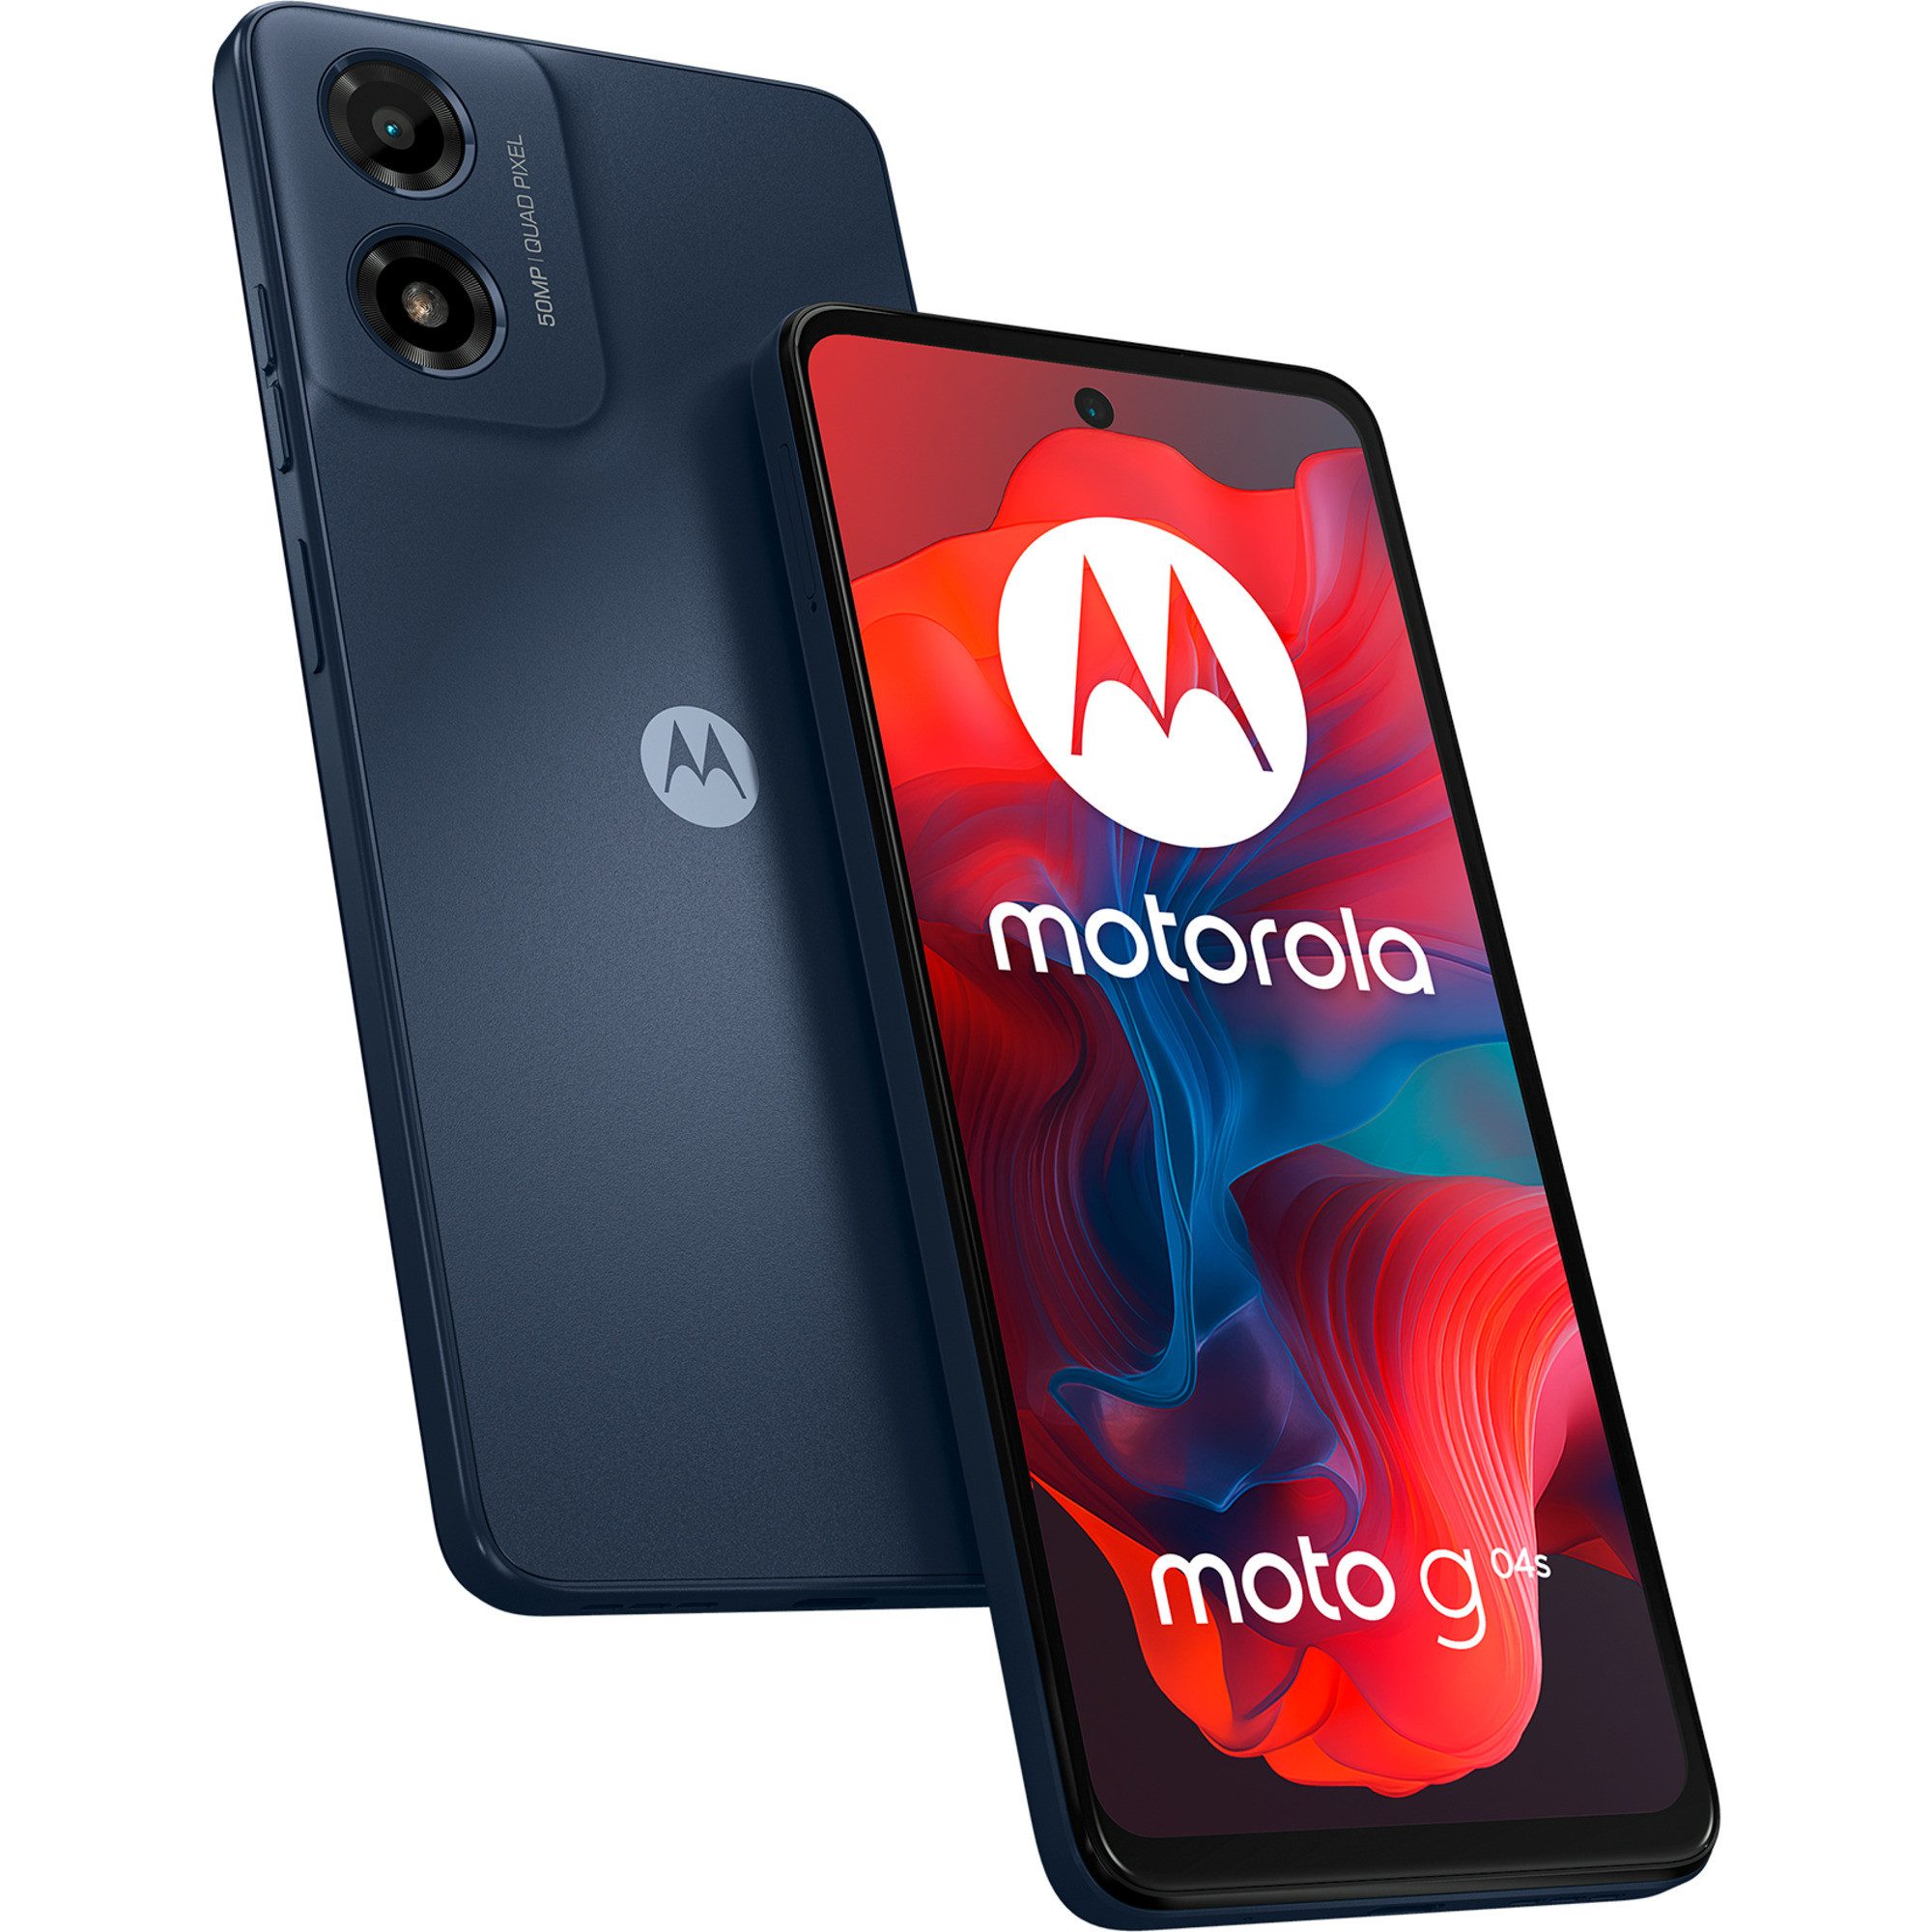 Motorola moto g04s 64GB Smartphone (50 MP MP Kamera)